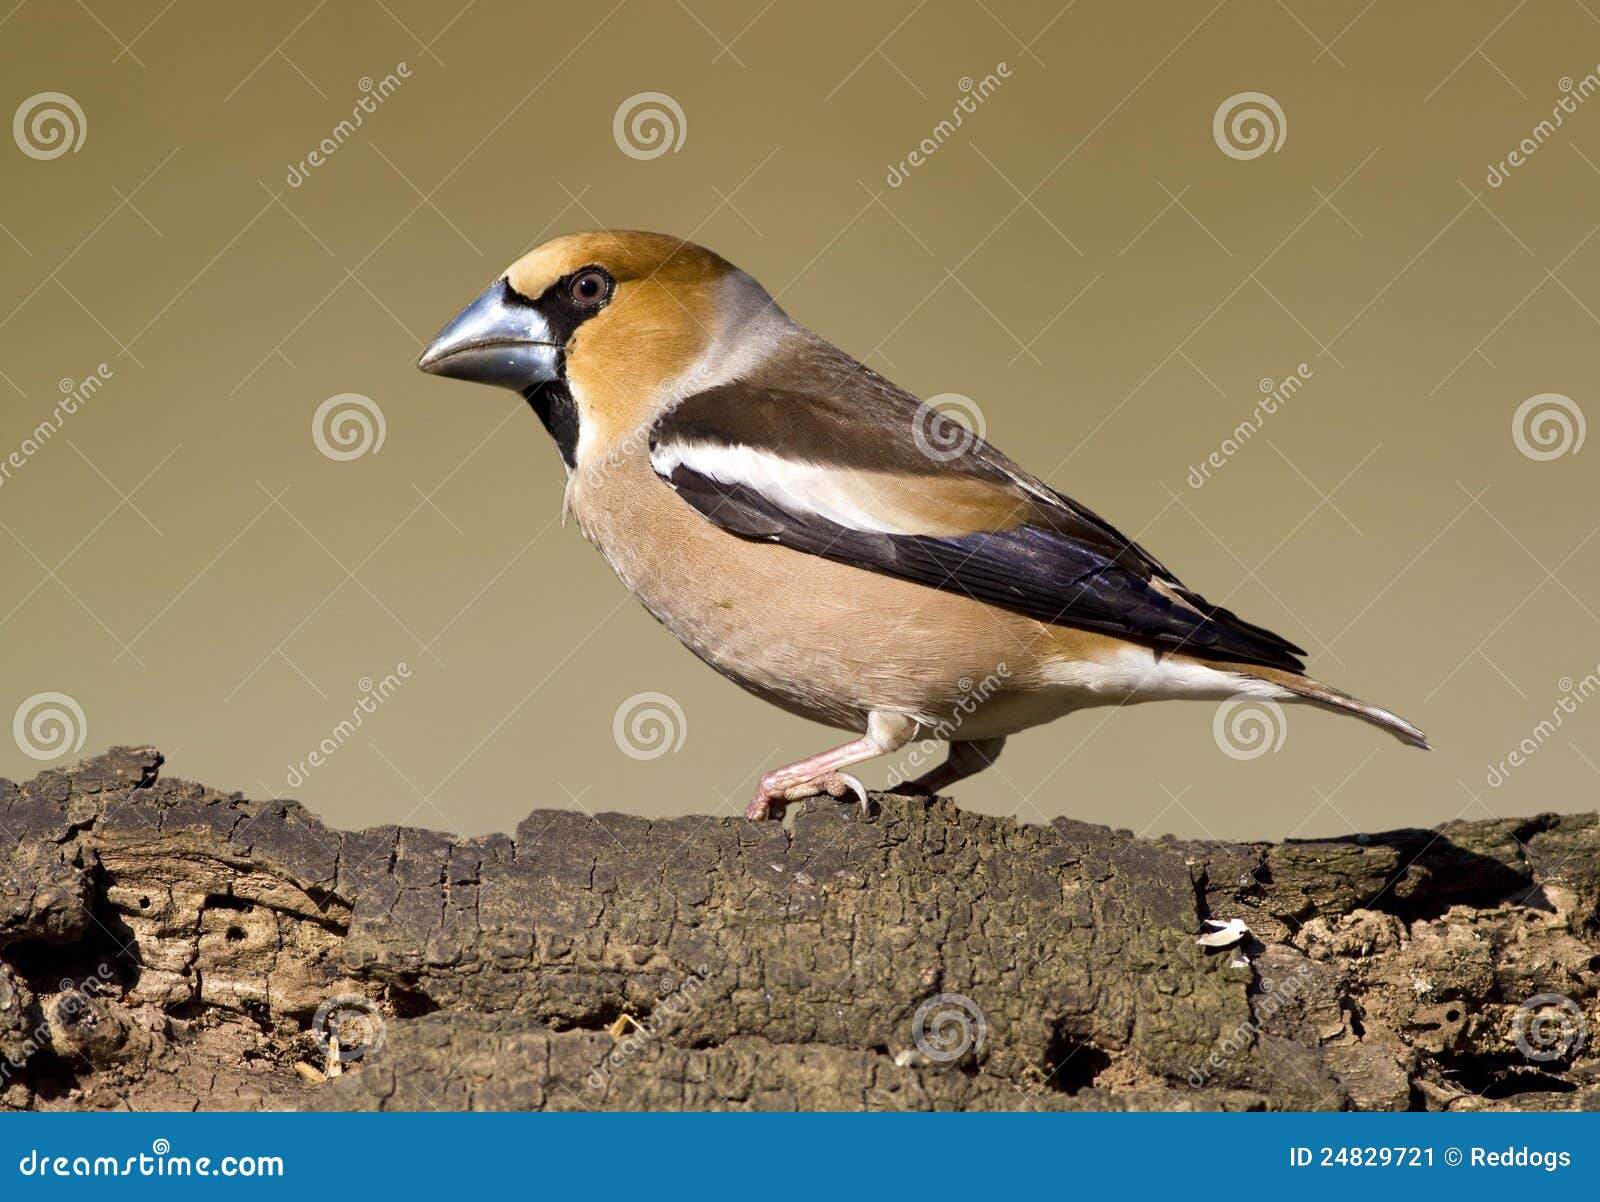 De vogel van Hawfinch. De mooie zitting van de vinkvogel op een hout